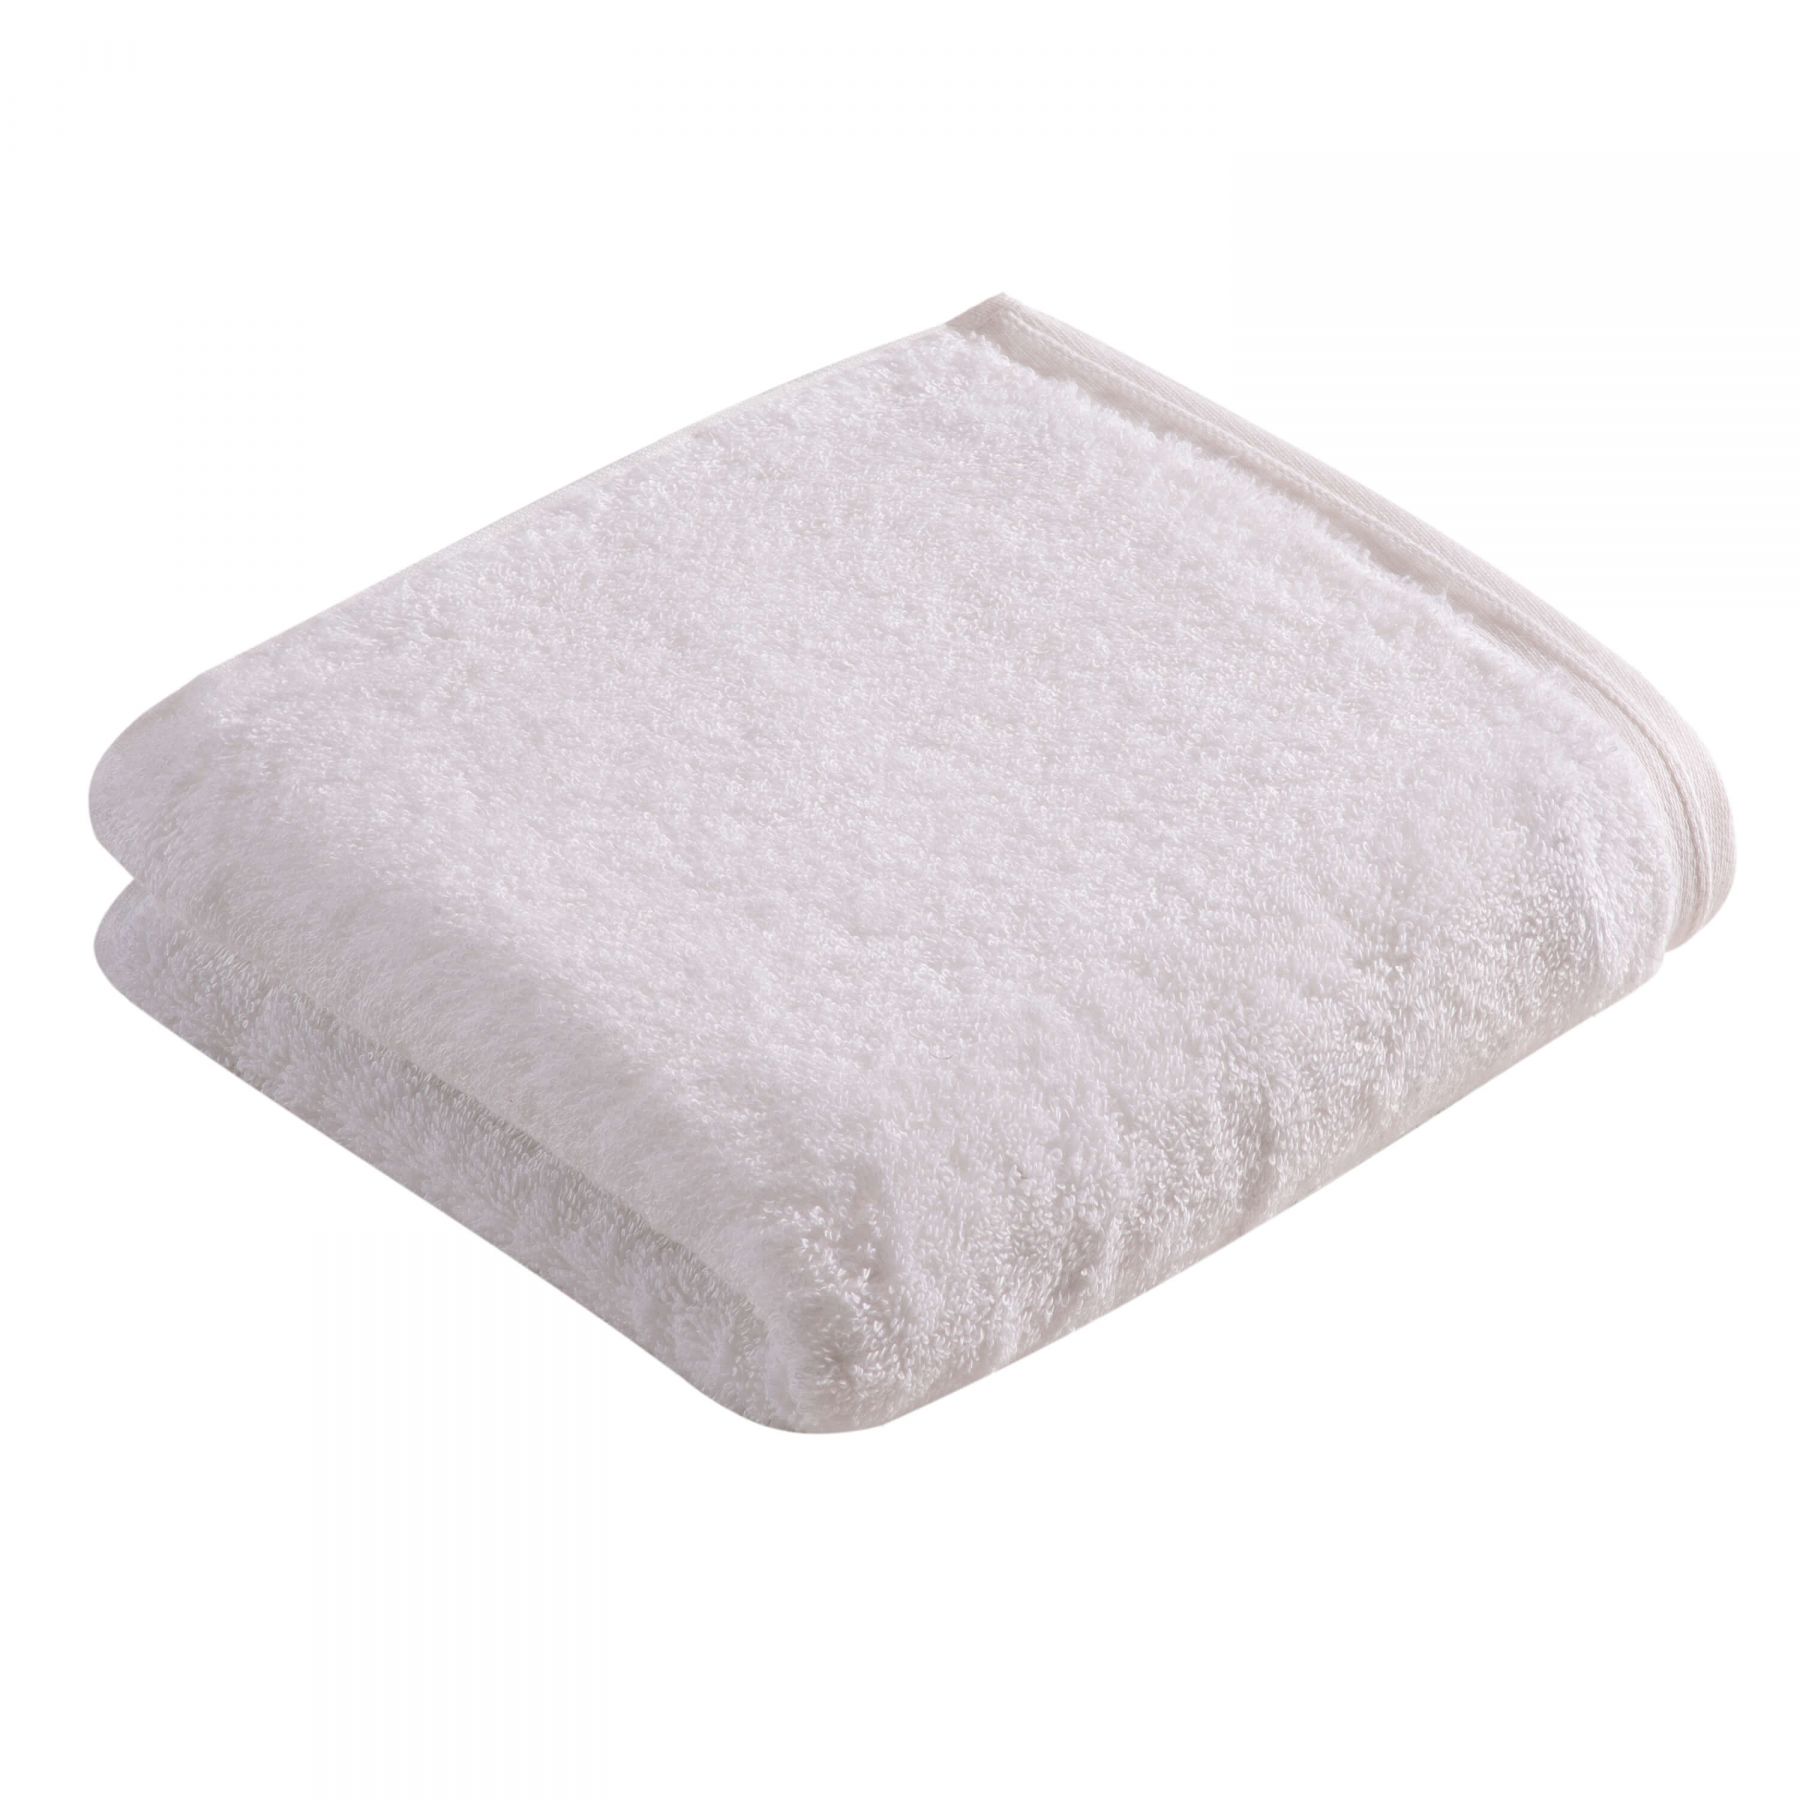 Элитное полотенце Vegan Life White ☞ Размер: 30 x 30 см